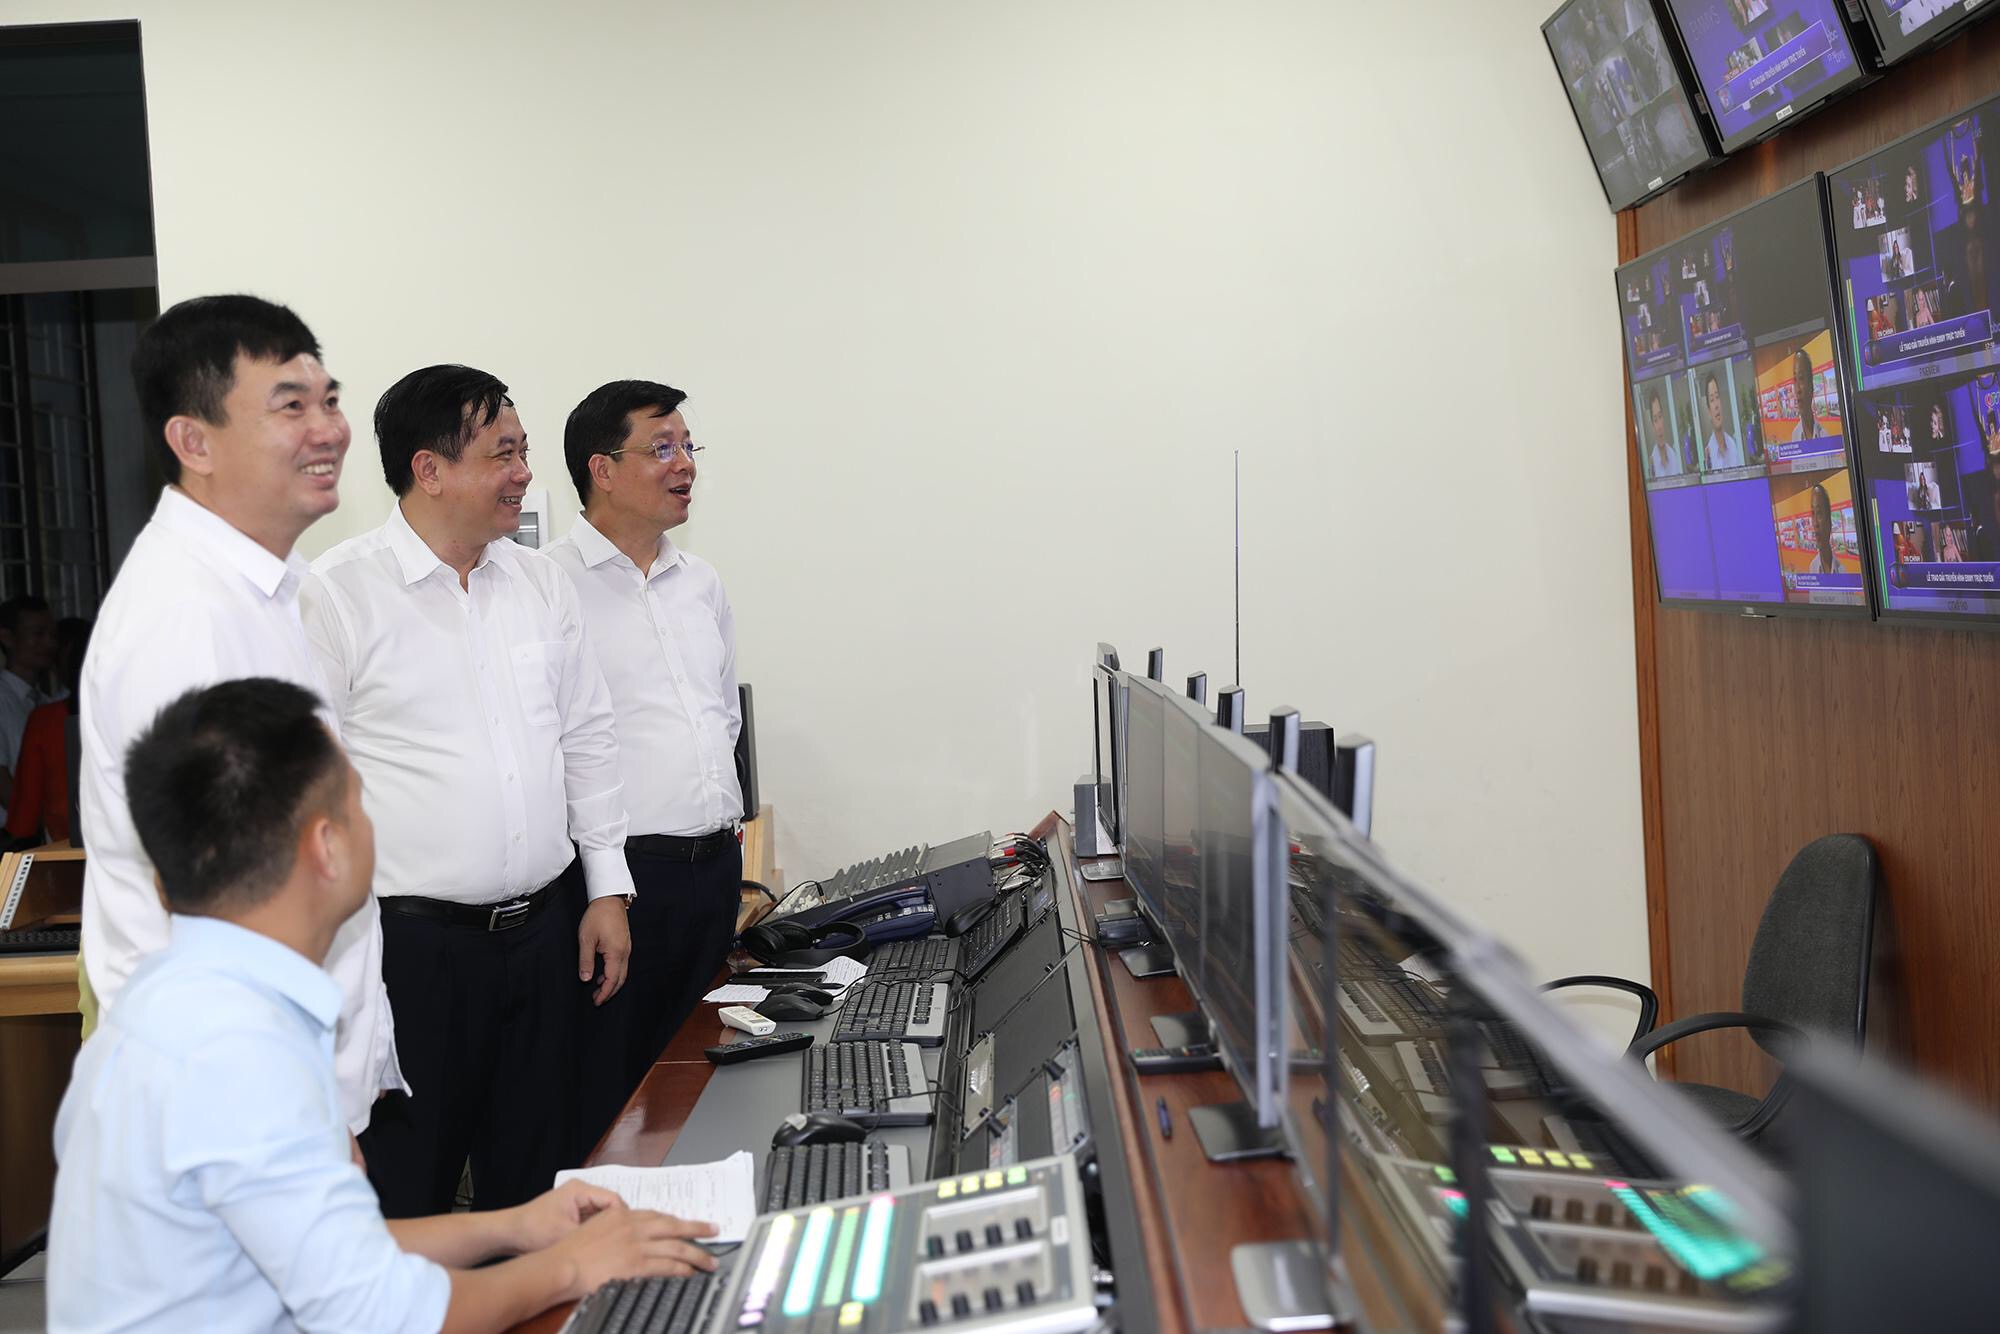 Đồng chí Ngô Hoàng Ngân, Phó Bí thư Thường trực Tỉnh ủy, tham quan hệ thống sản xuất chương trình tại Trung tâm Truyền thông Quảng Ninh